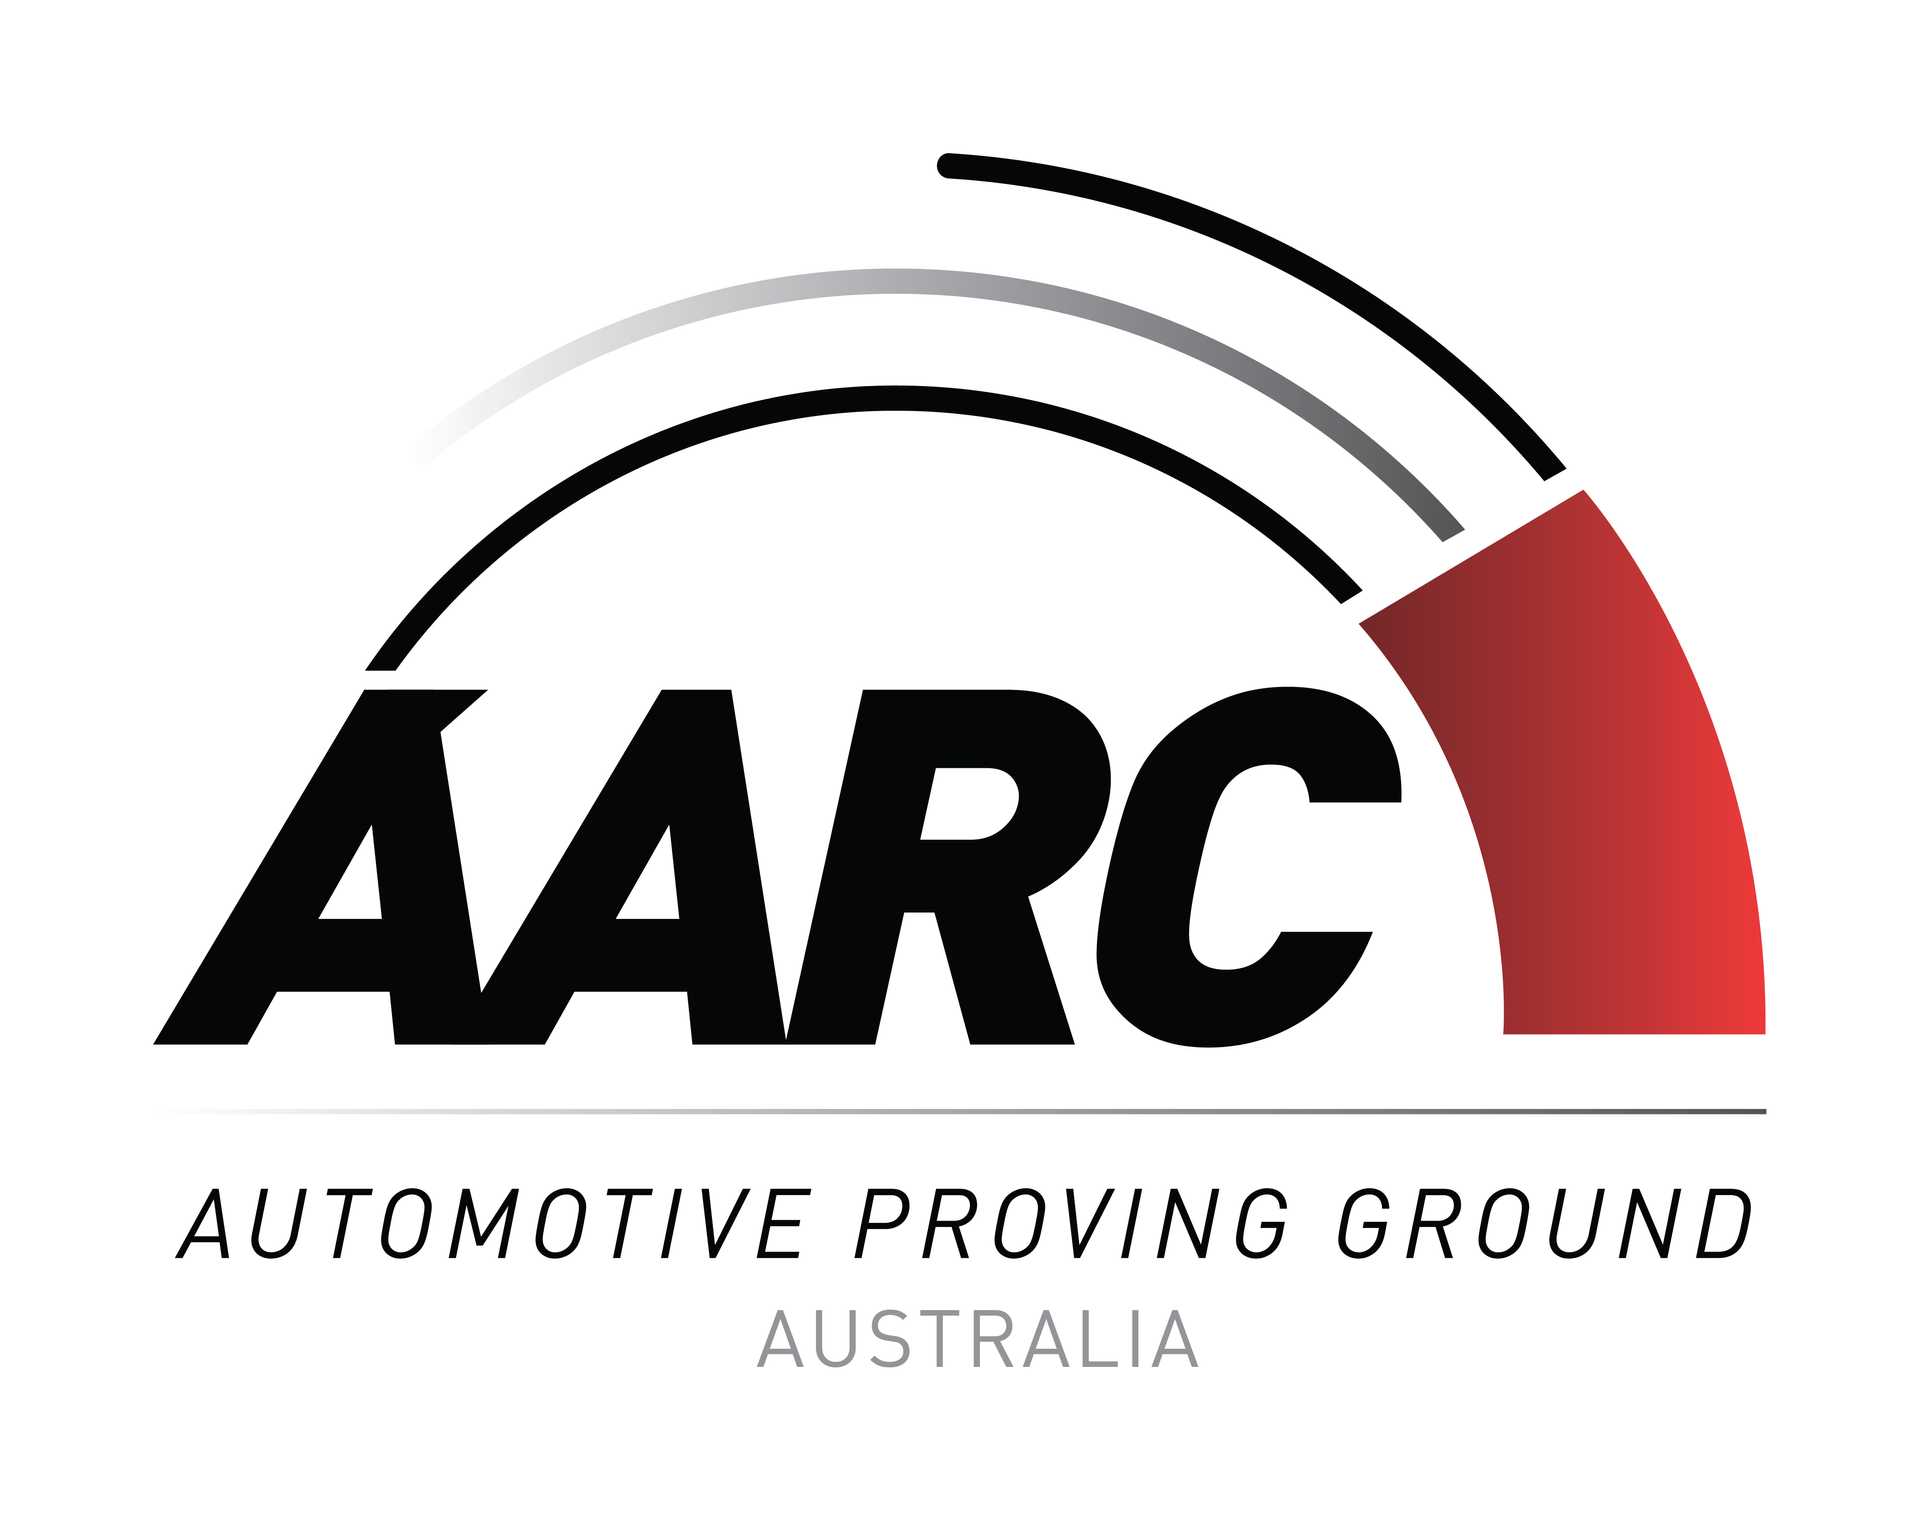 Logo of AARC